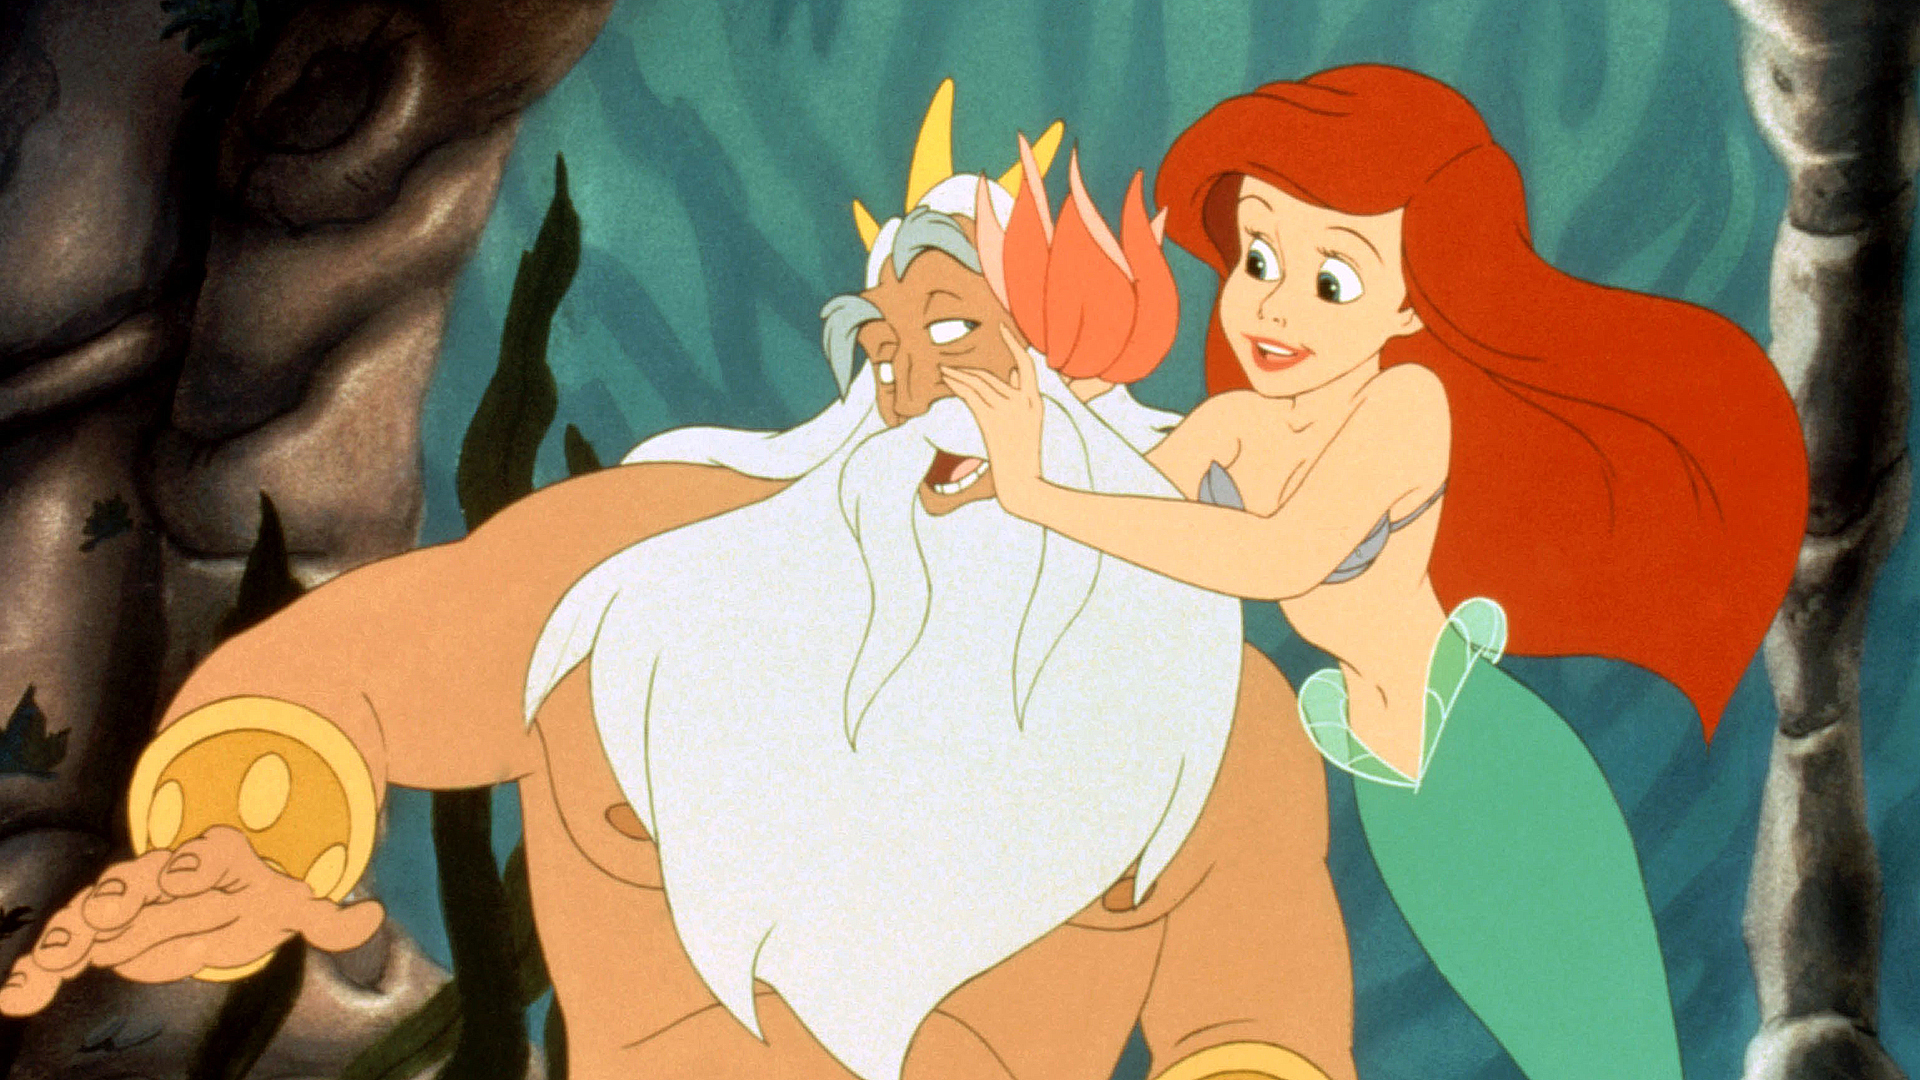 Desglose del personaje: ¿Qué hace que Ariel sea más que una sirenita?